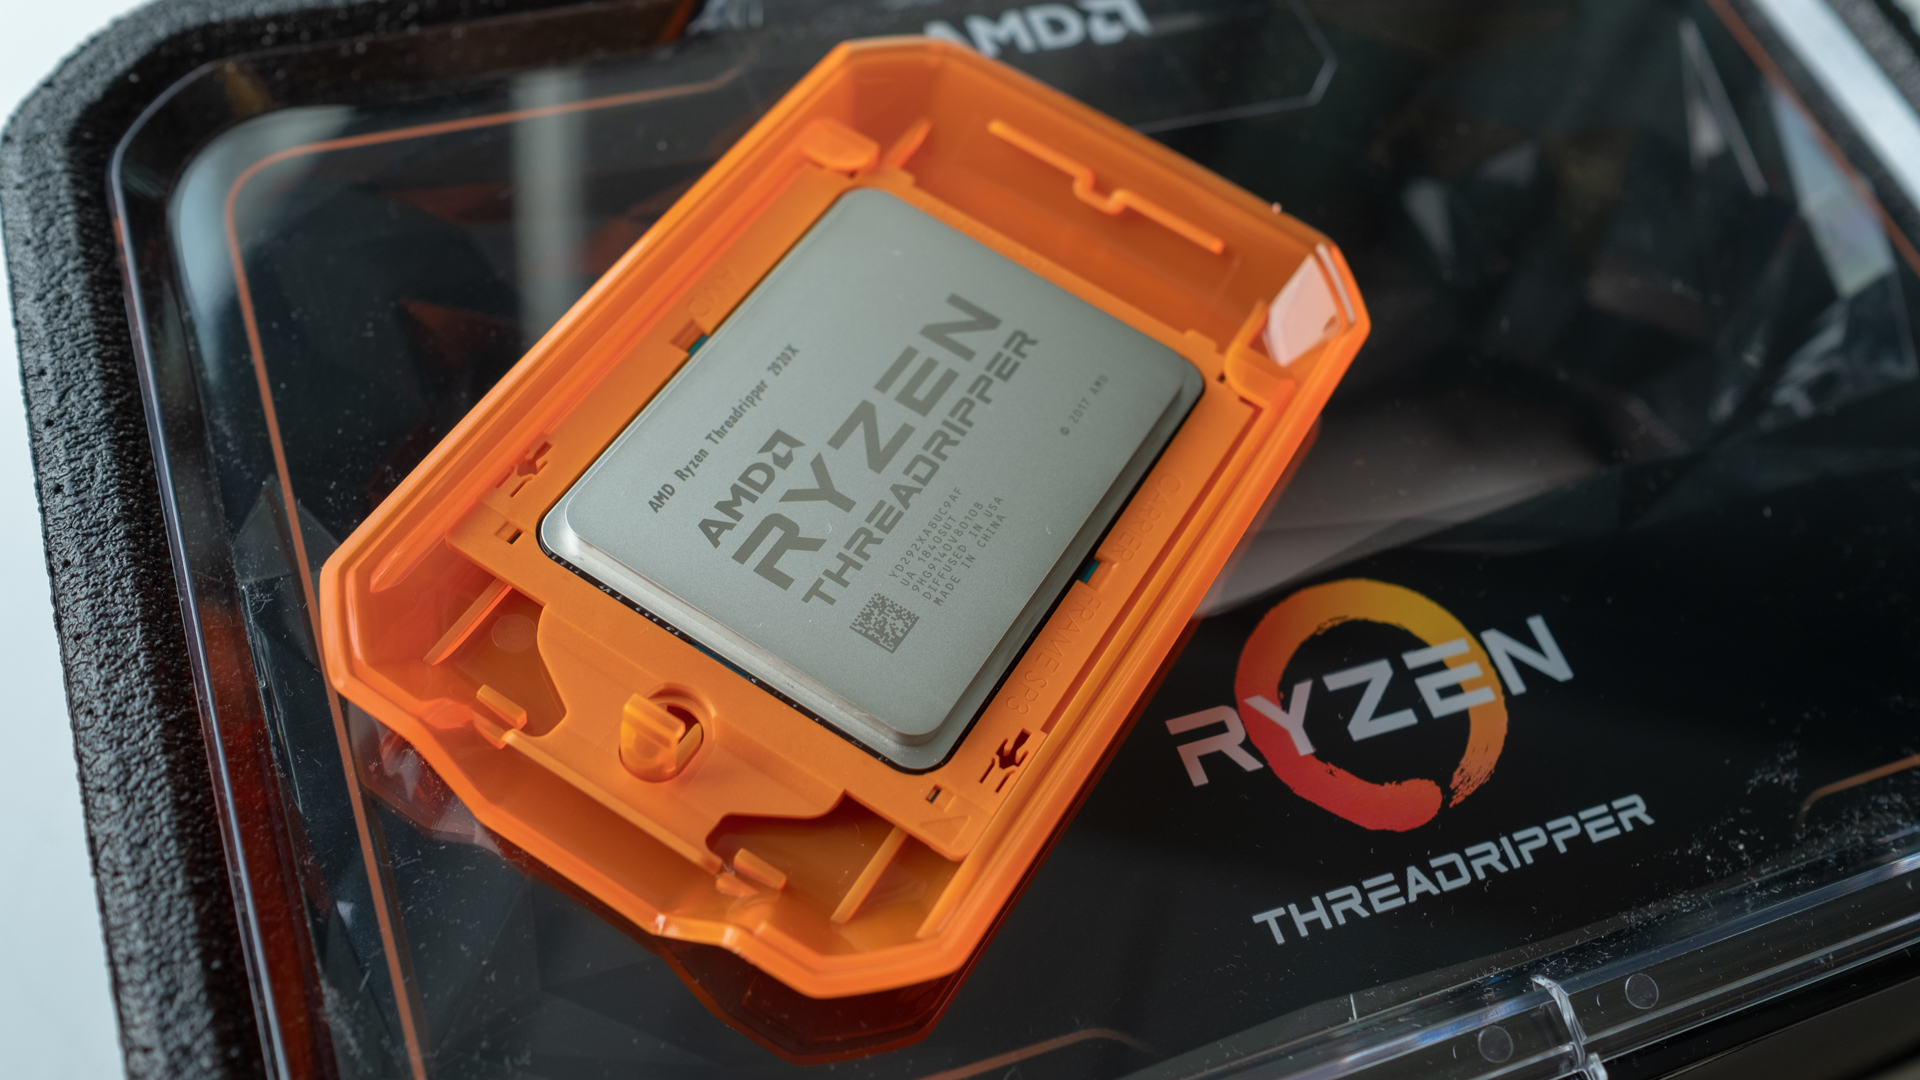 96 Cores, One Chip! First Tests: AMD's Ryzen Threadripper Pro